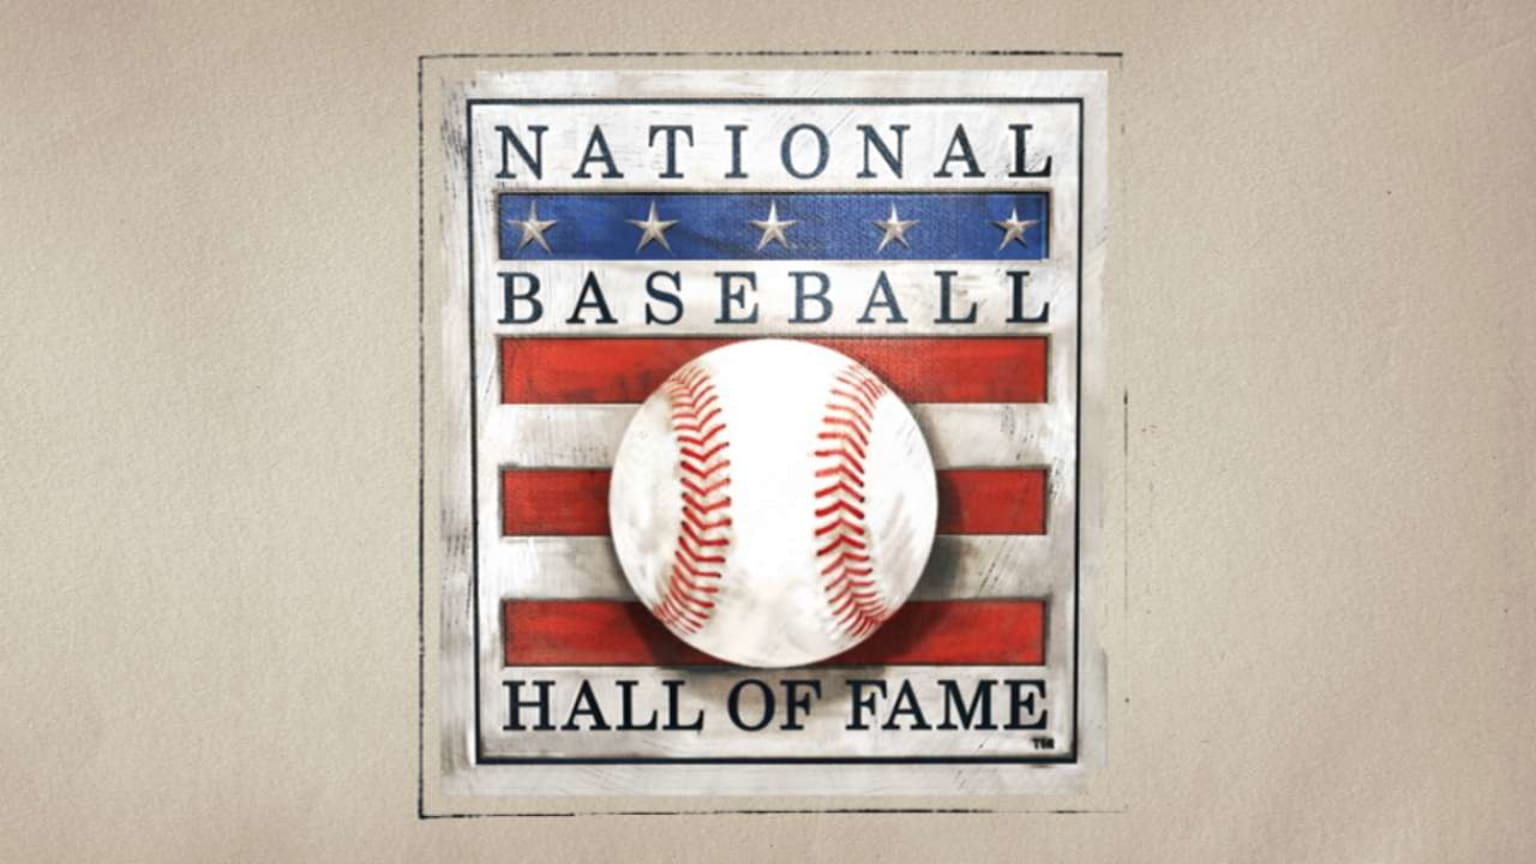 Baseball Hall of Fame logo